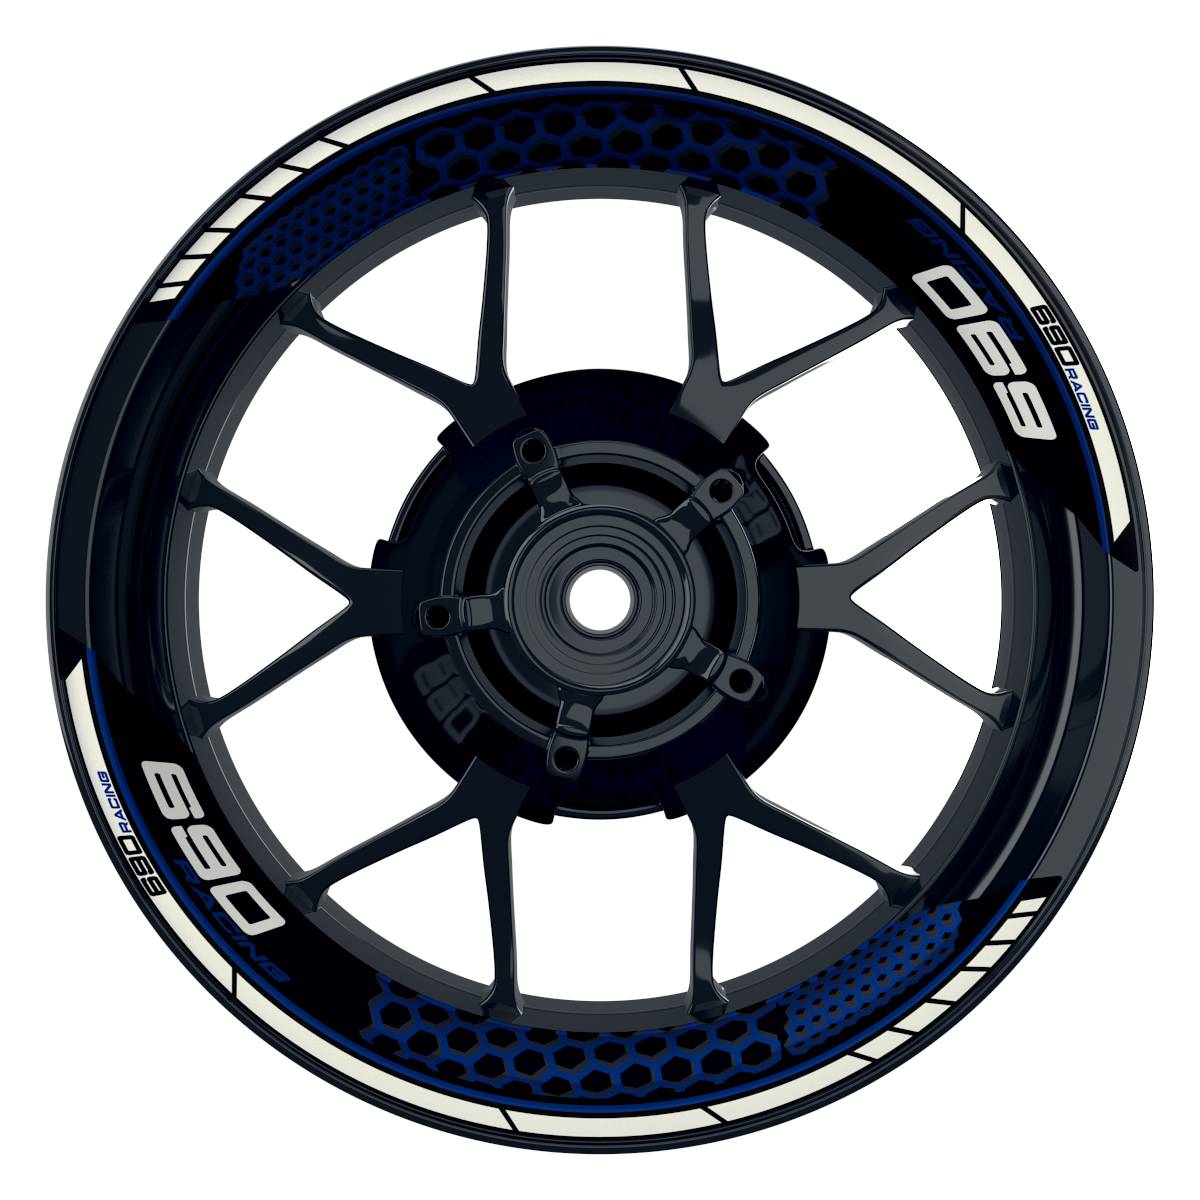 KTM Racing 690 Hexagon schwarz blau Frontansicht